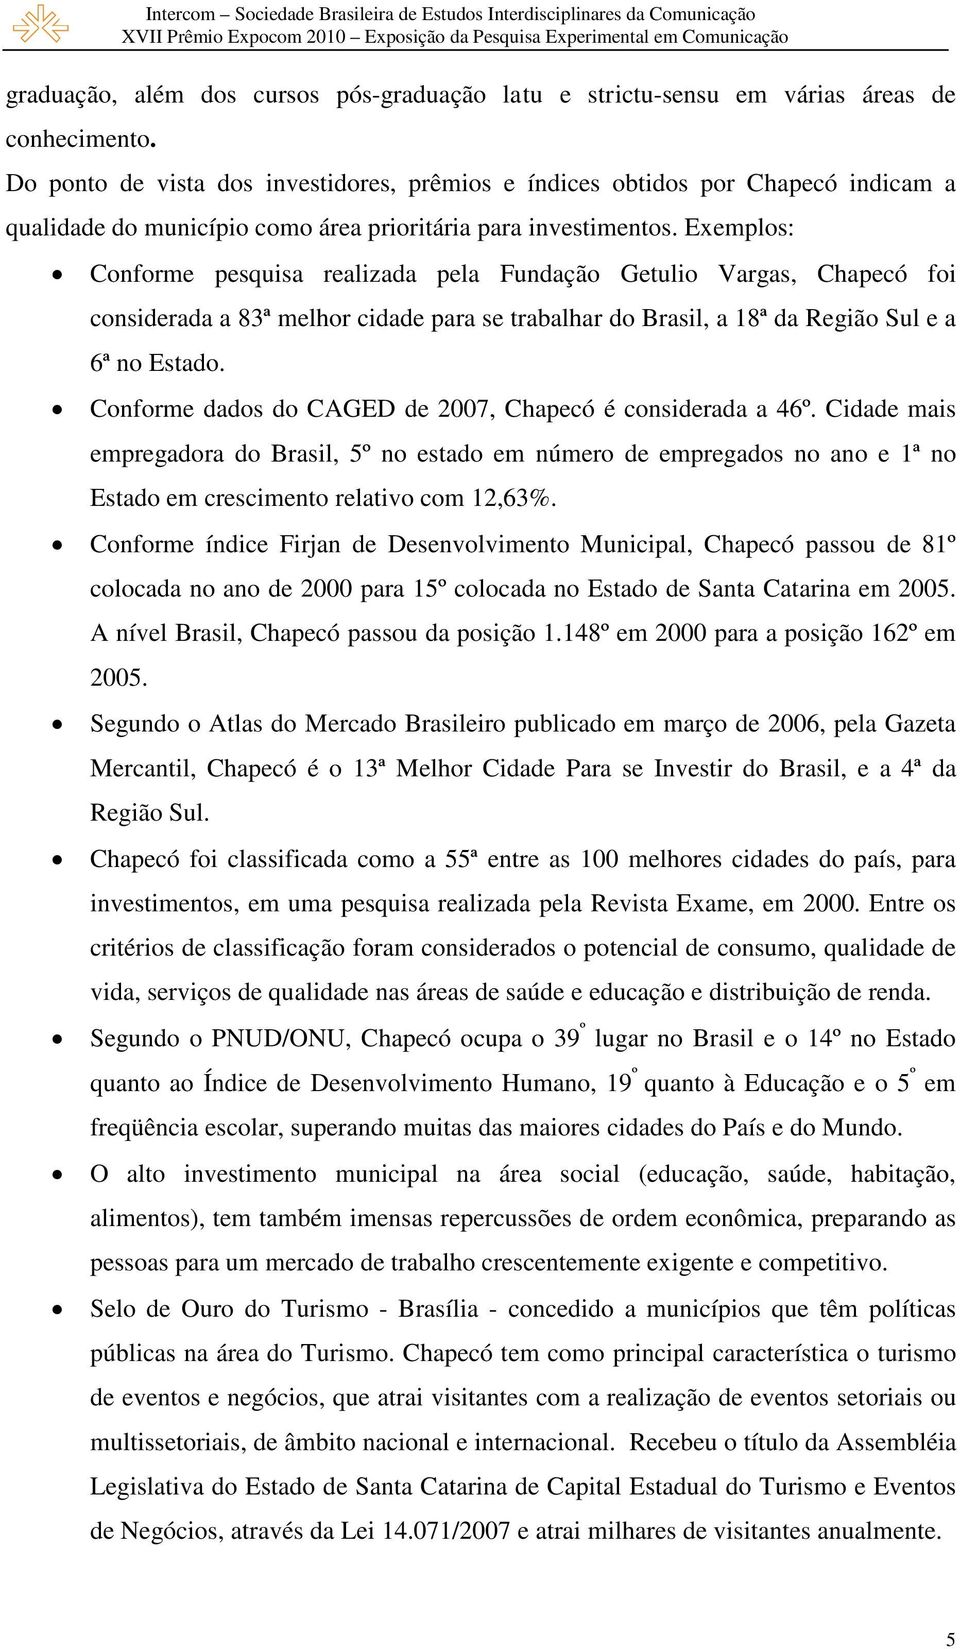 Exemplos: Conforme pesquisa realizada pela Fundação Getulio Vargas, Chapecó foi considerada a 83ª melhor cidade para se trabalhar do Brasil, a 18ª da Região Sul e a 6ª no Estado.